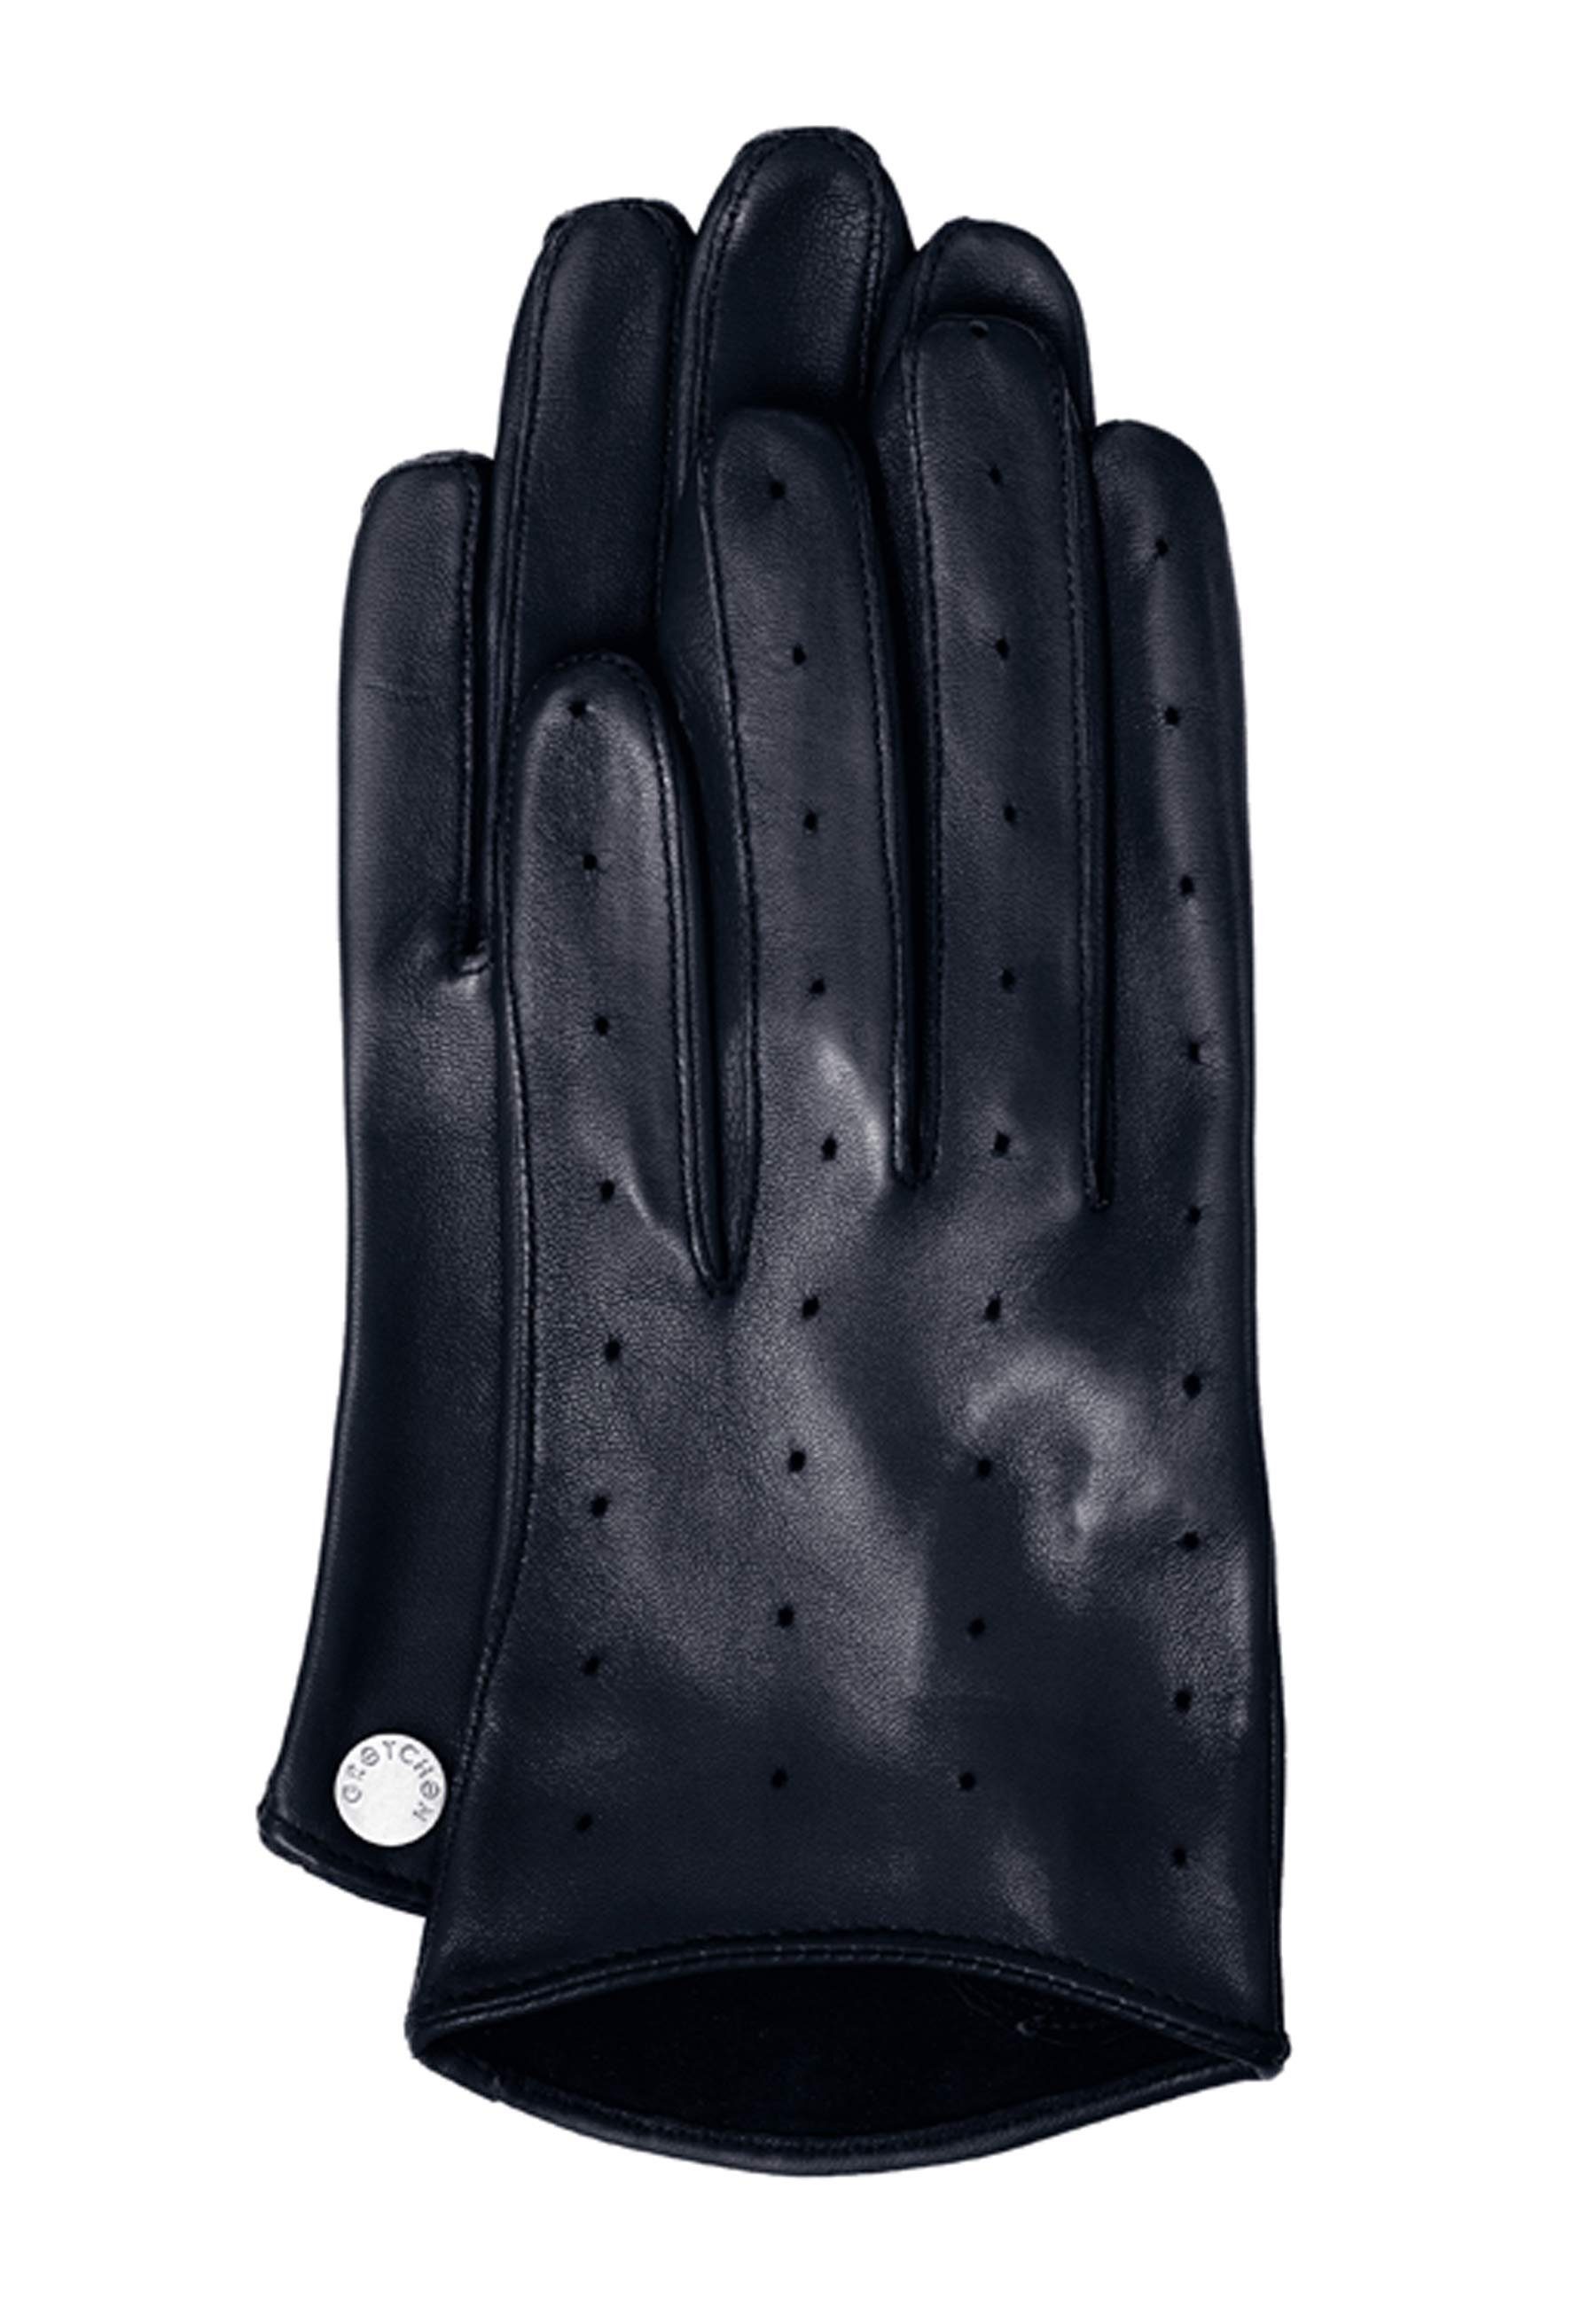 GRETCHEN Lederhandschuhe Summer Gloves mit praktischen Luftlöchern blau | Handschuhe